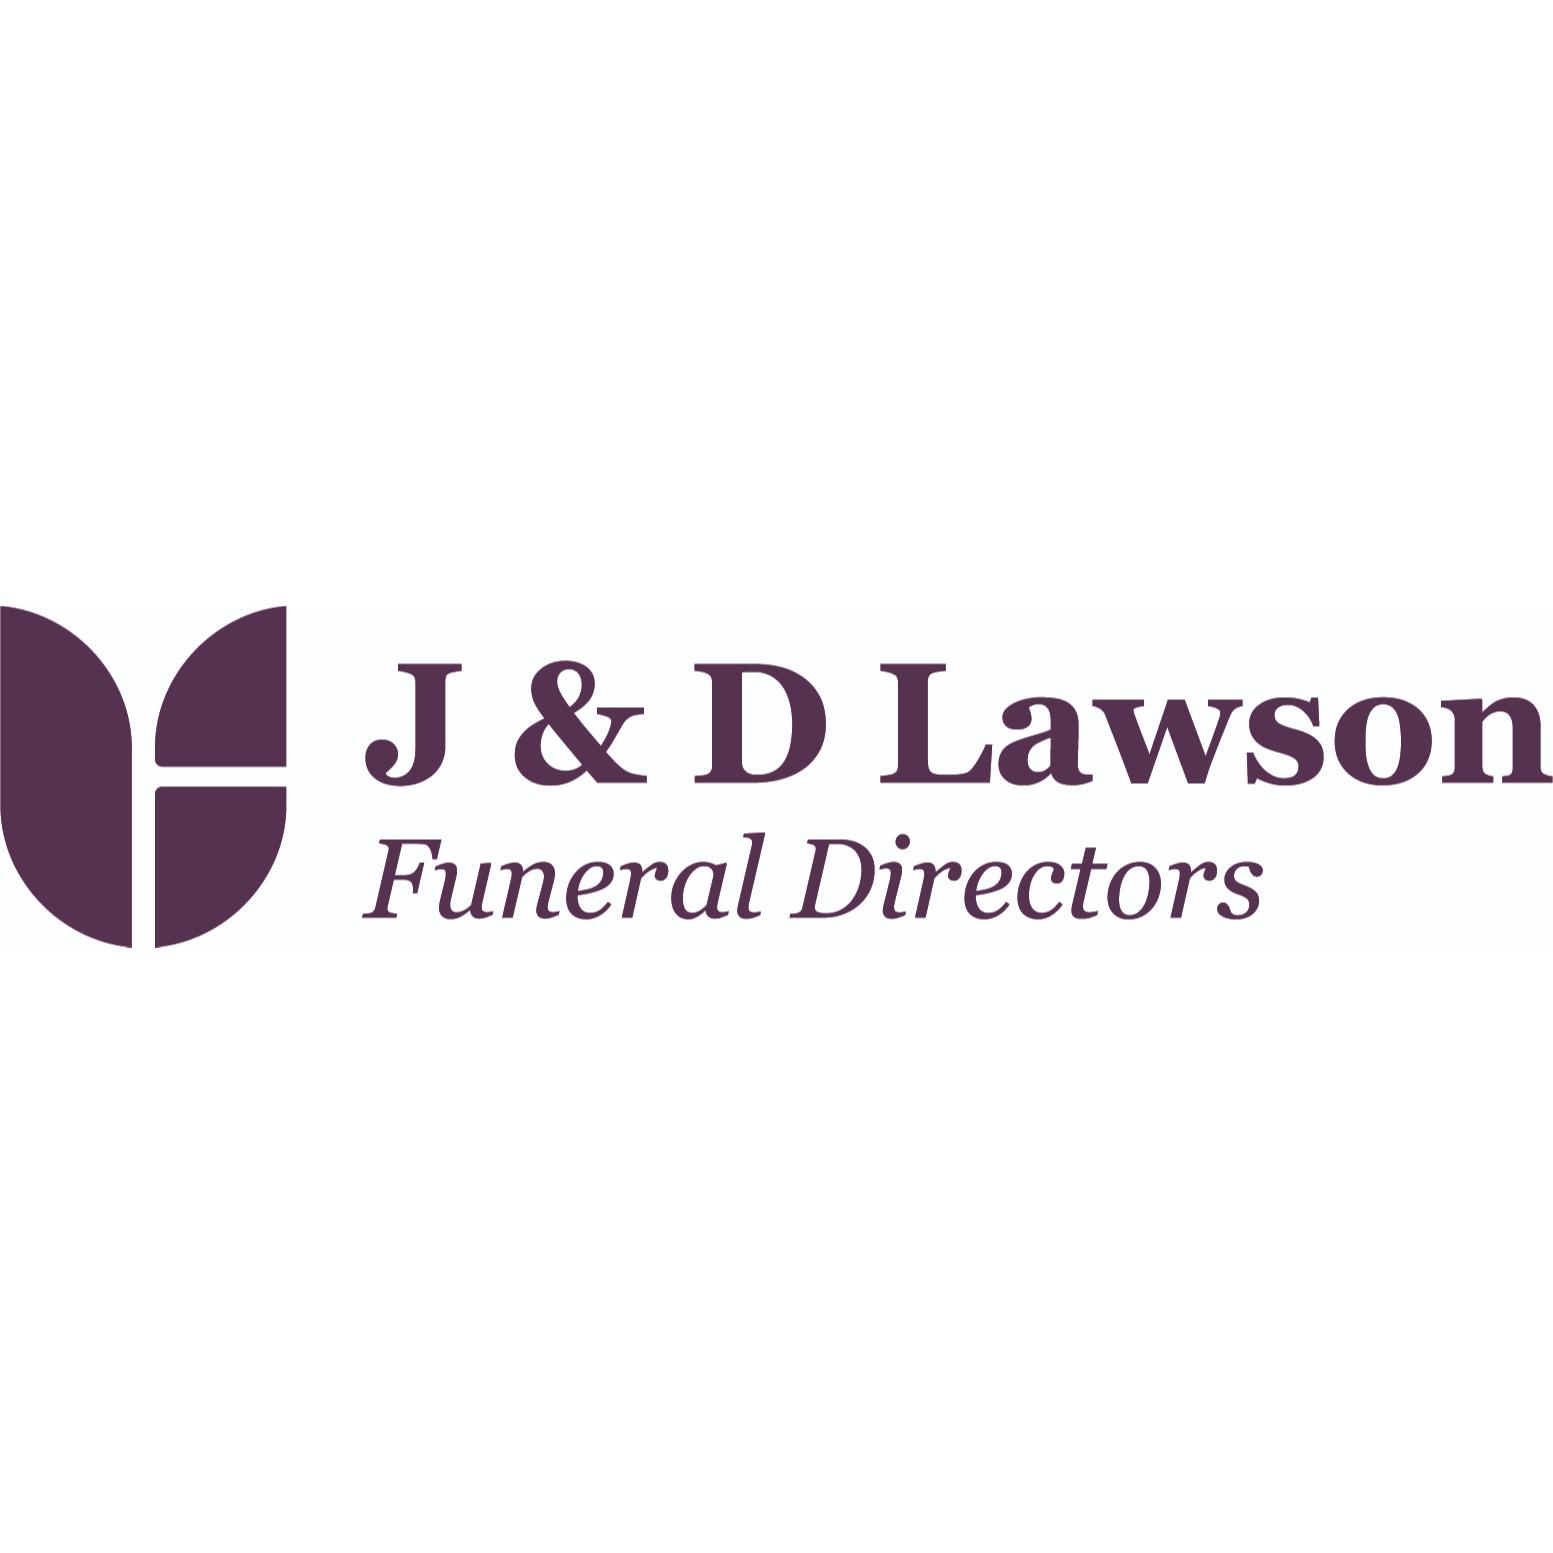 J & D Lawson Funeral Directors Glasgow 01417 762242